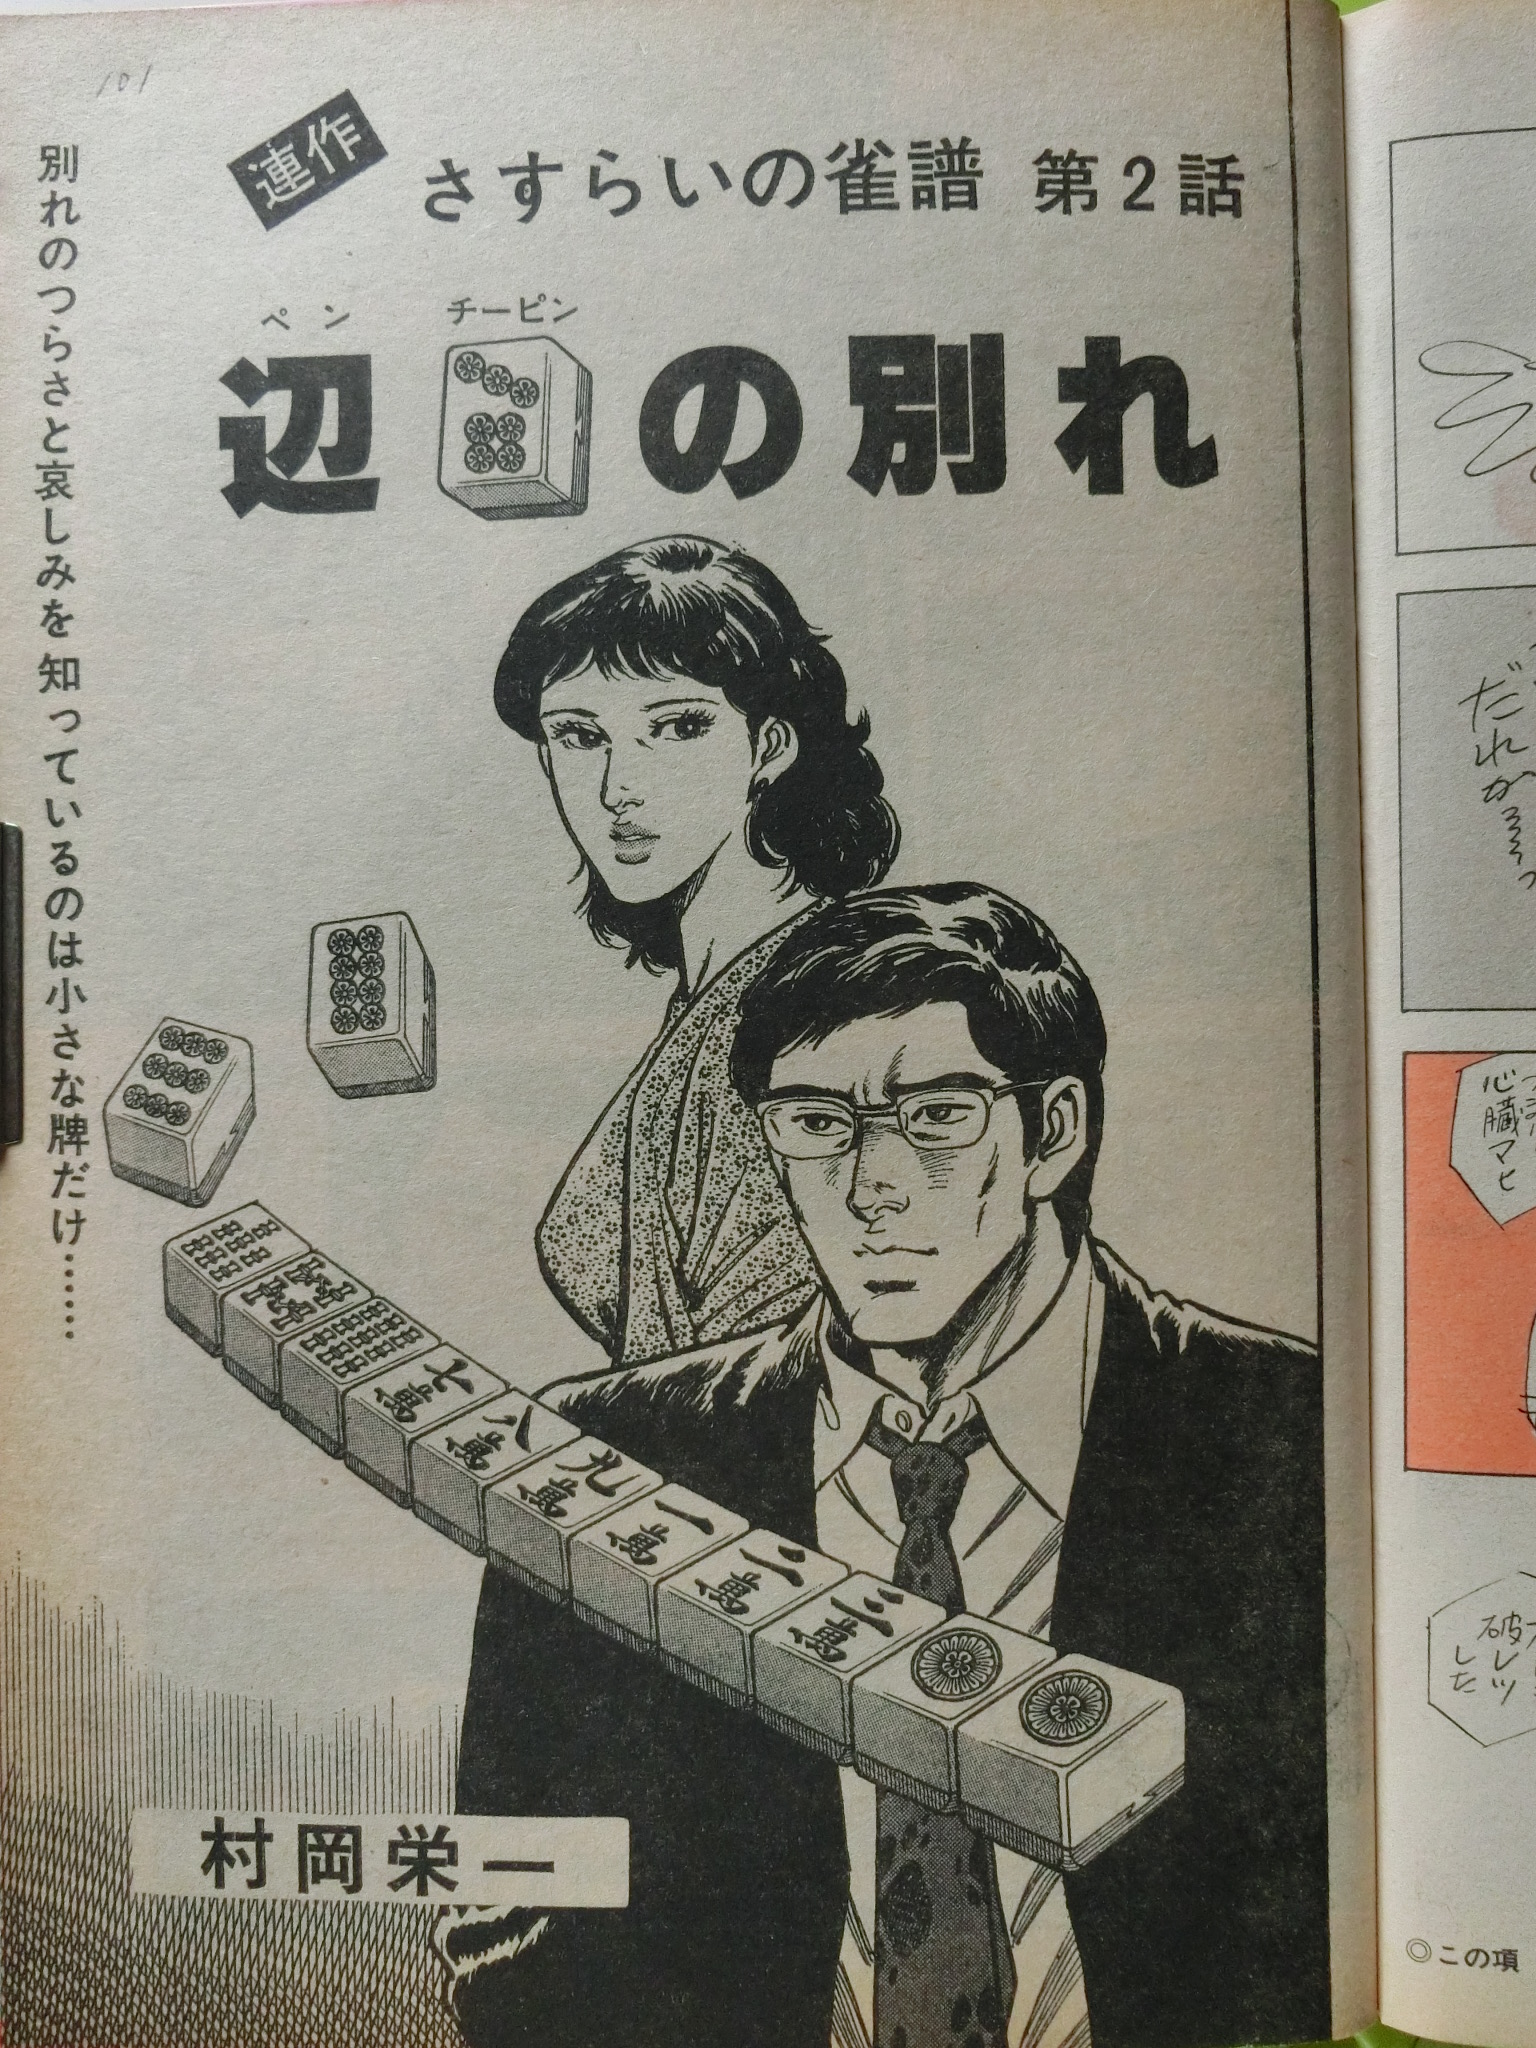 漫画アクション 1978/ 8/3日号 松方弘樹 離婚(満74歳没)